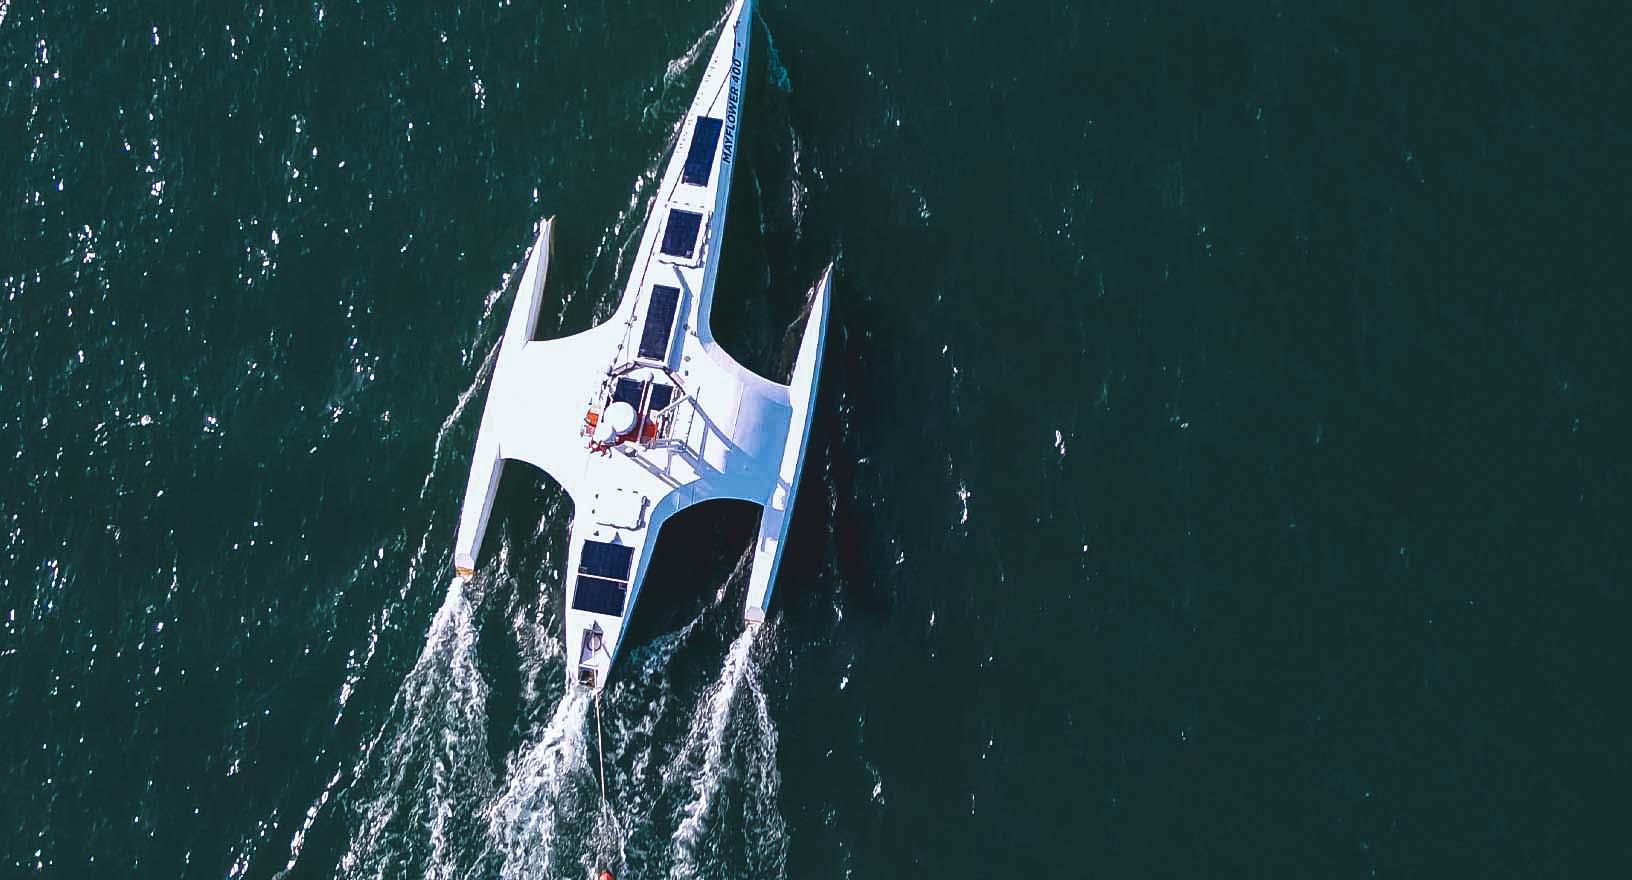 El barco autónomo Mayflower navega de forma autónoma a través de las aguas oceánicas verdes, equipado con tecnologías que permiten una autonomía garantizada